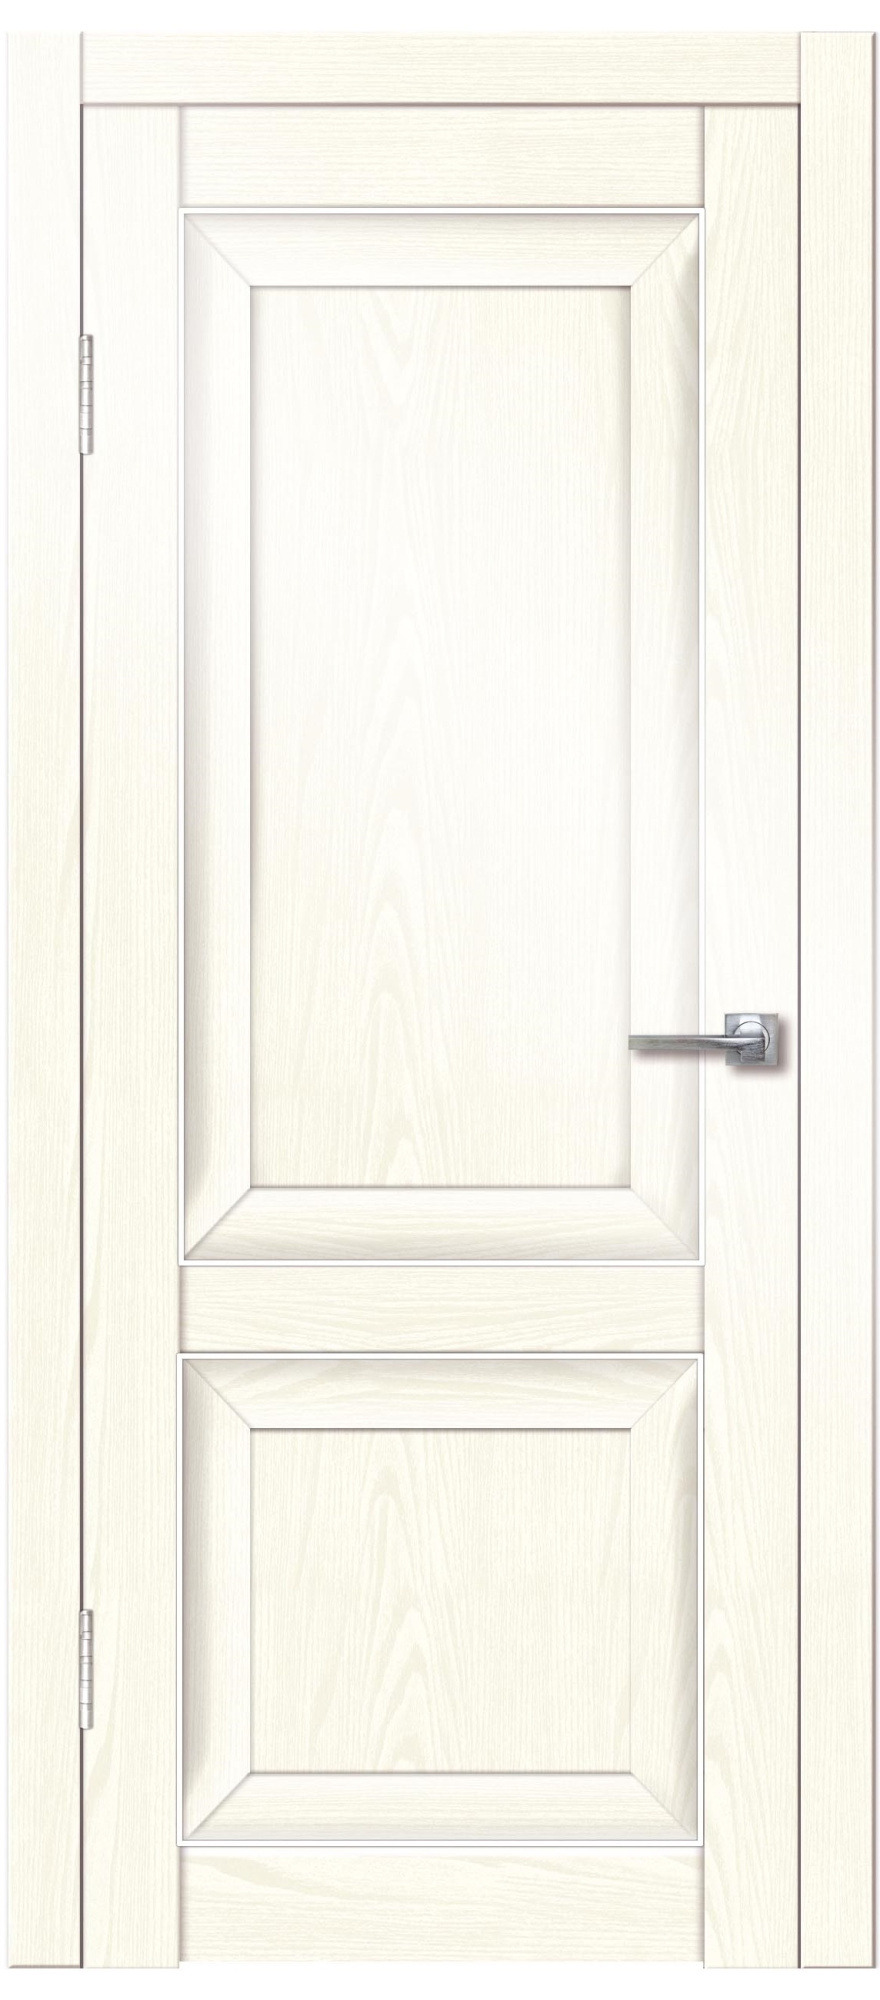 фото Дверь межкомнатная дверная линия дг-пг-1 700х2000 мм ясень белый/белая 21-08